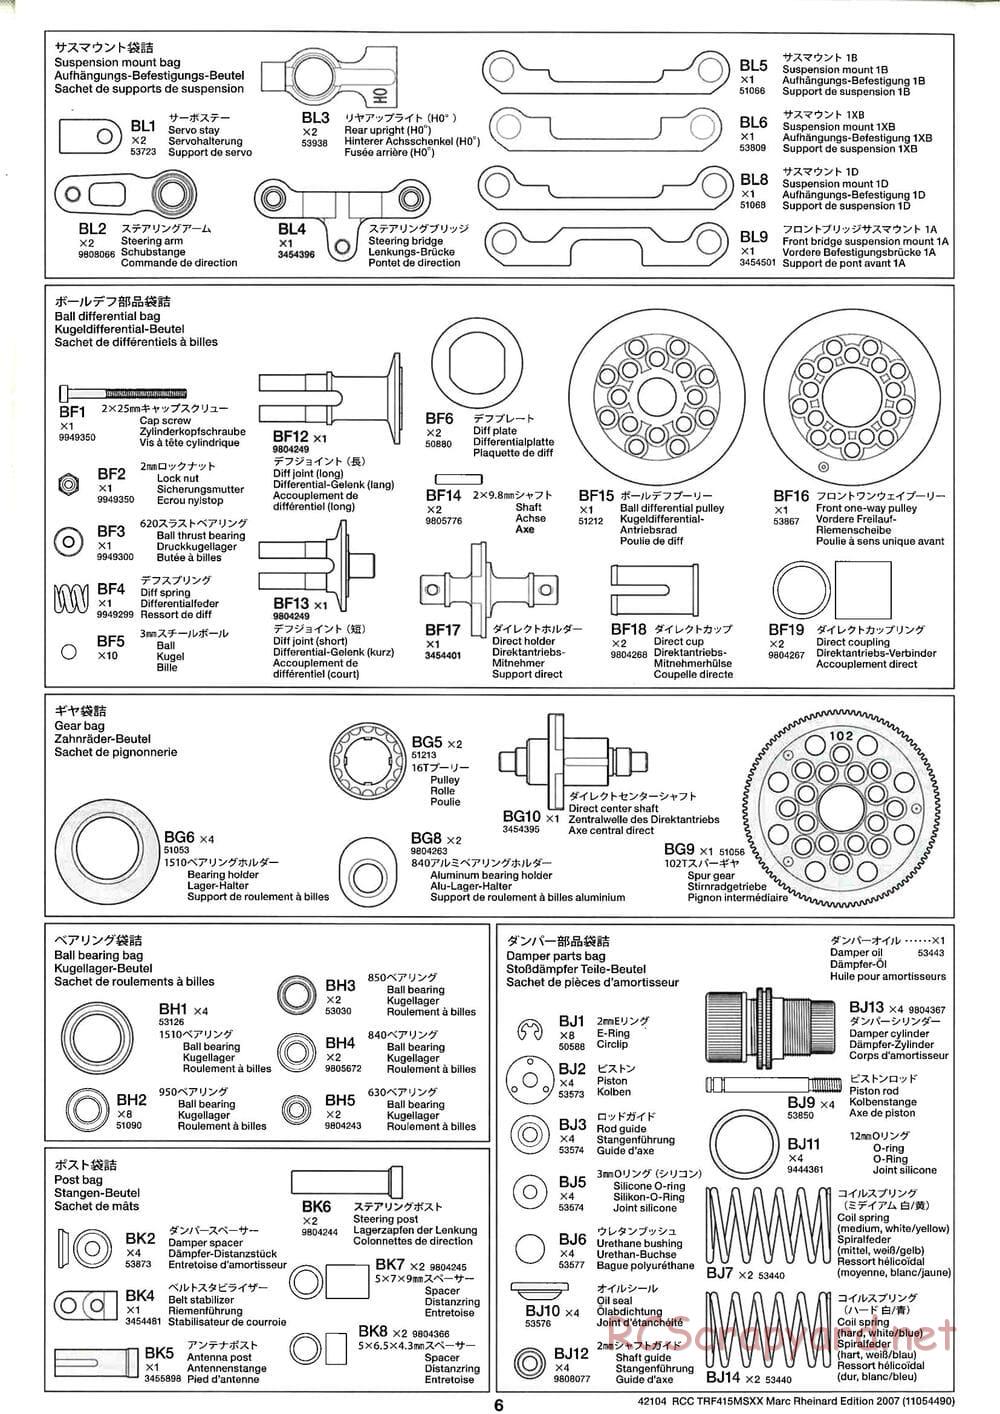 Tamiya - TRF415 MSXX - Marc Rheinard Edition 2007 Chassis - Manual - Page 6